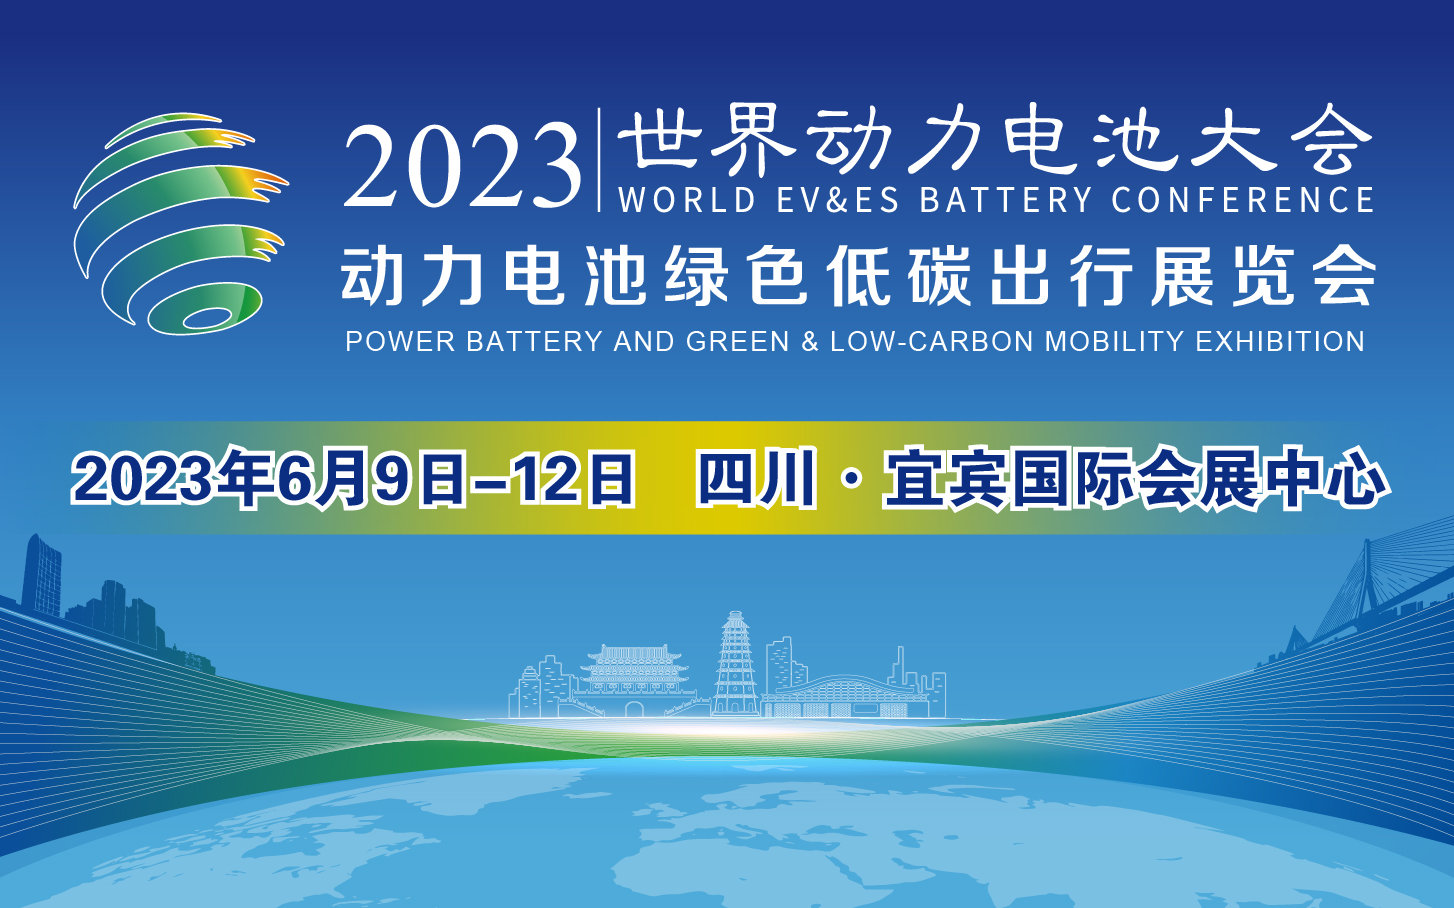 2023世界动力电池大会暨动力电池绿色低碳出行展览会